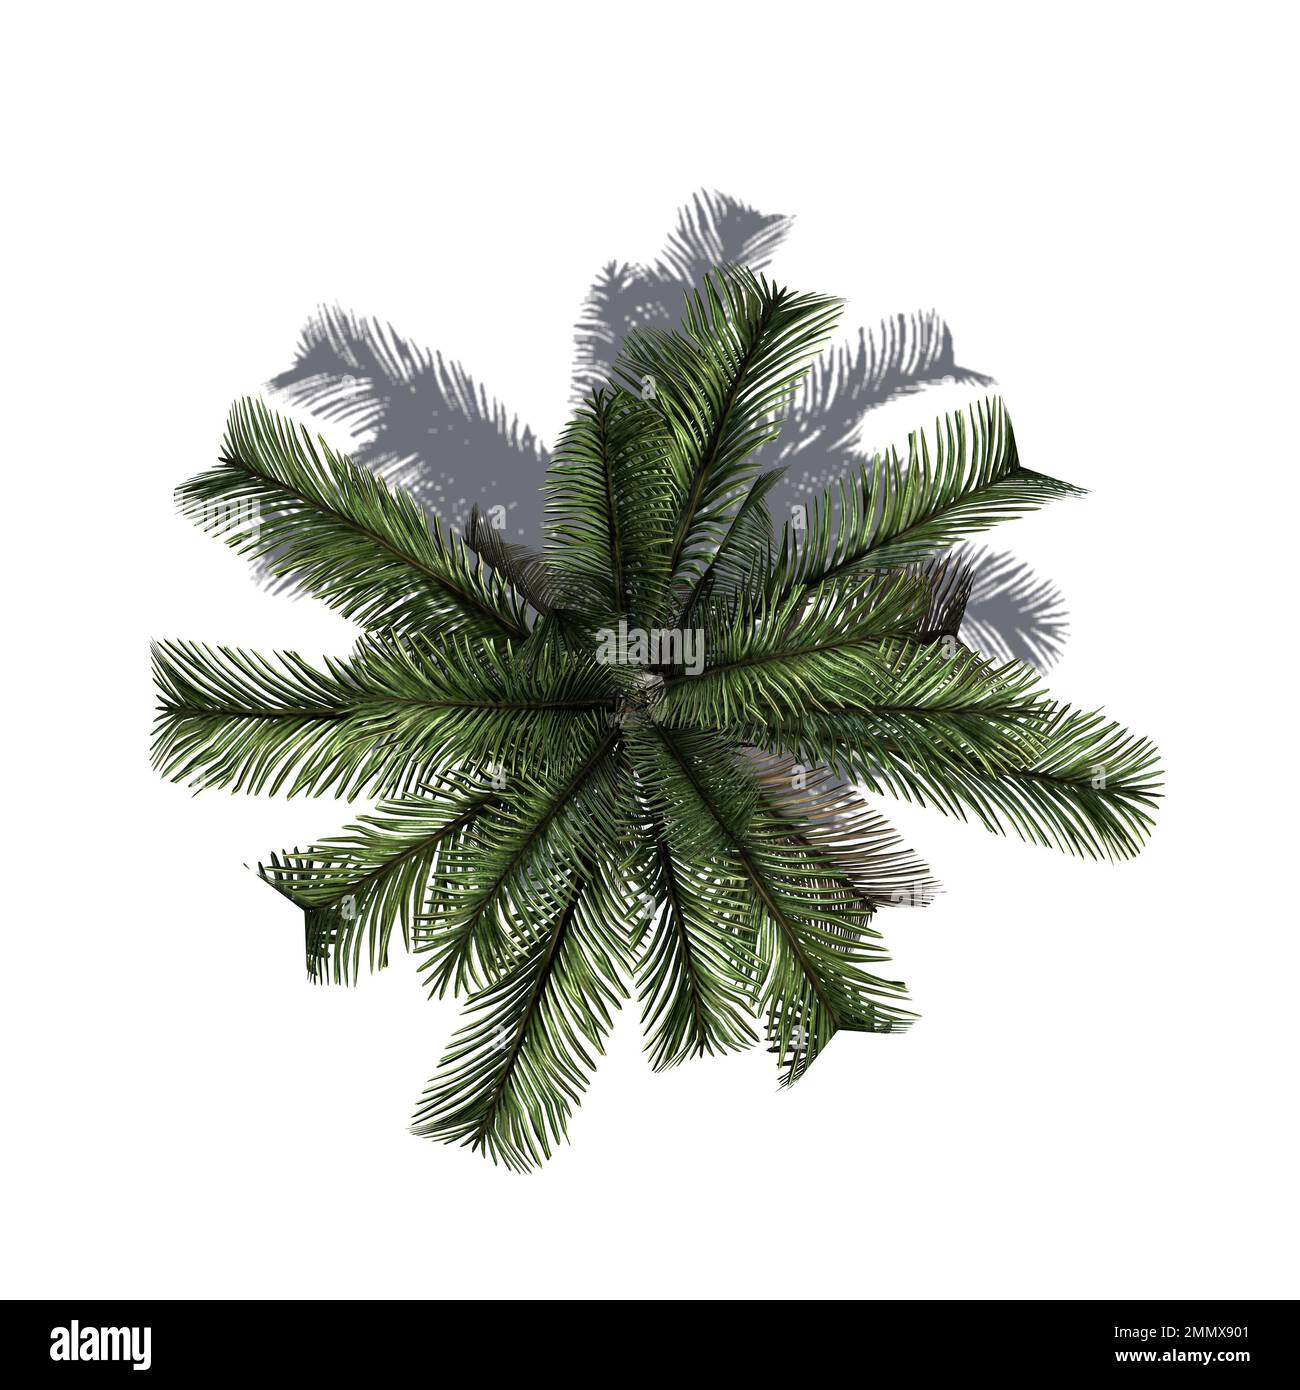 Dattelpalme mit Schatten isoliert auf weißem Hintergrund - Draufsicht - Verwendung für Architektur- oder Gartendesign - 3D-Illustration Stockfoto